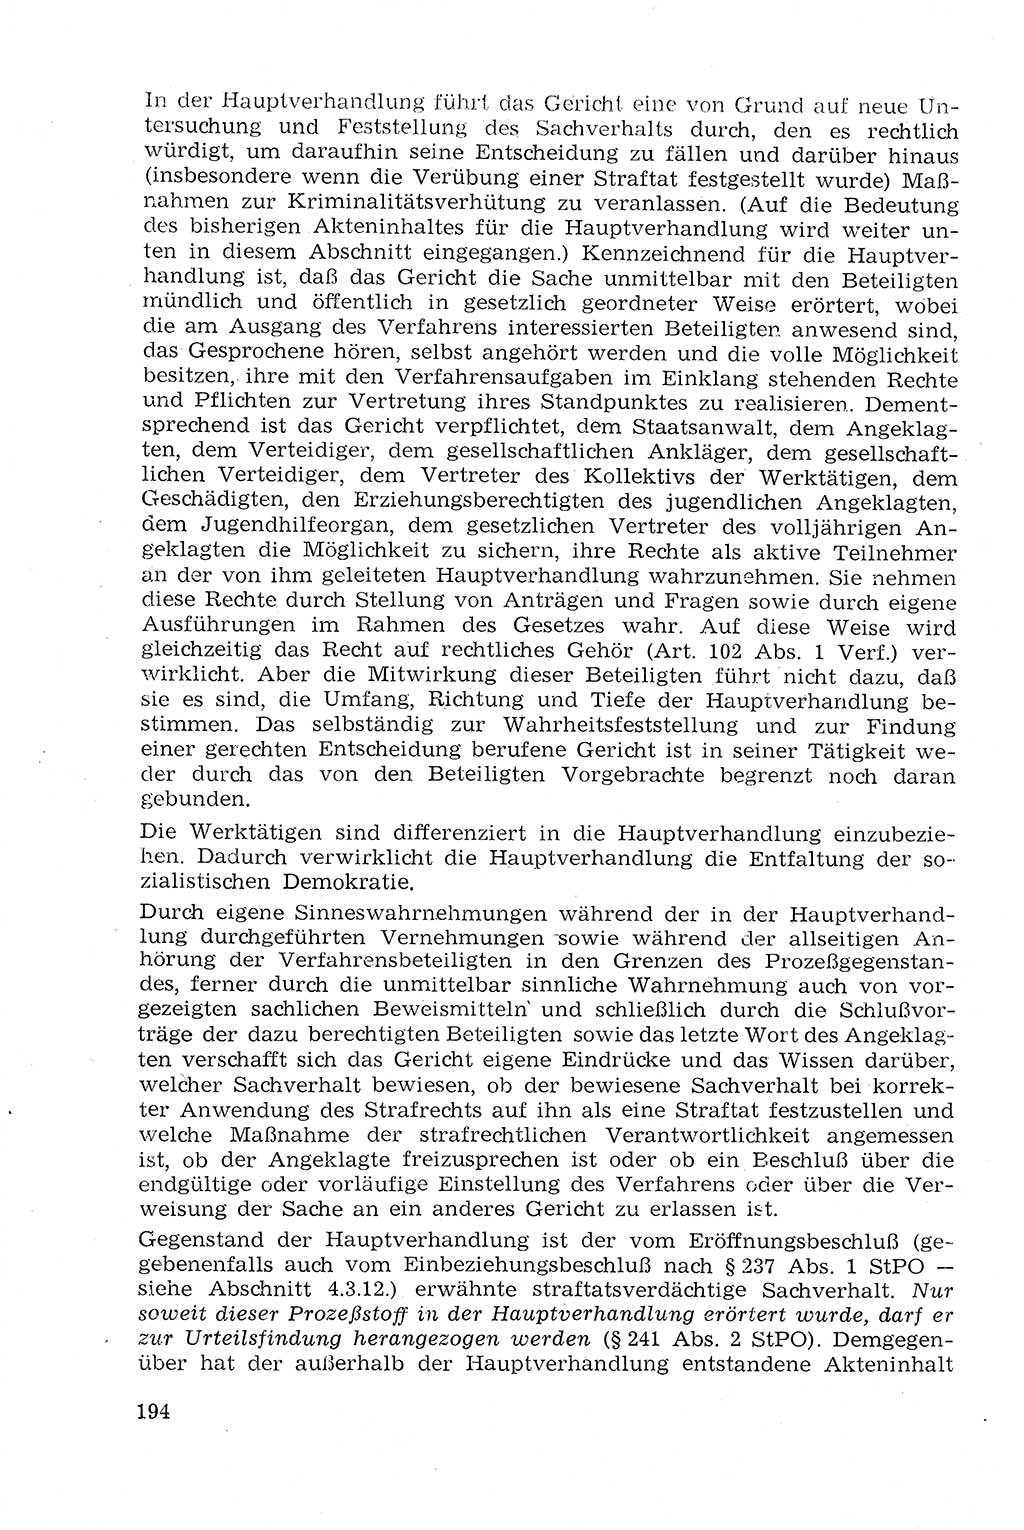 Strafprozeßrecht der DDR (Deutsche Demokratische Republik), Lehrmaterial 1969, Seite 194 (Strafprozeßr. DDR Lehrmat. 1969, S. 194)